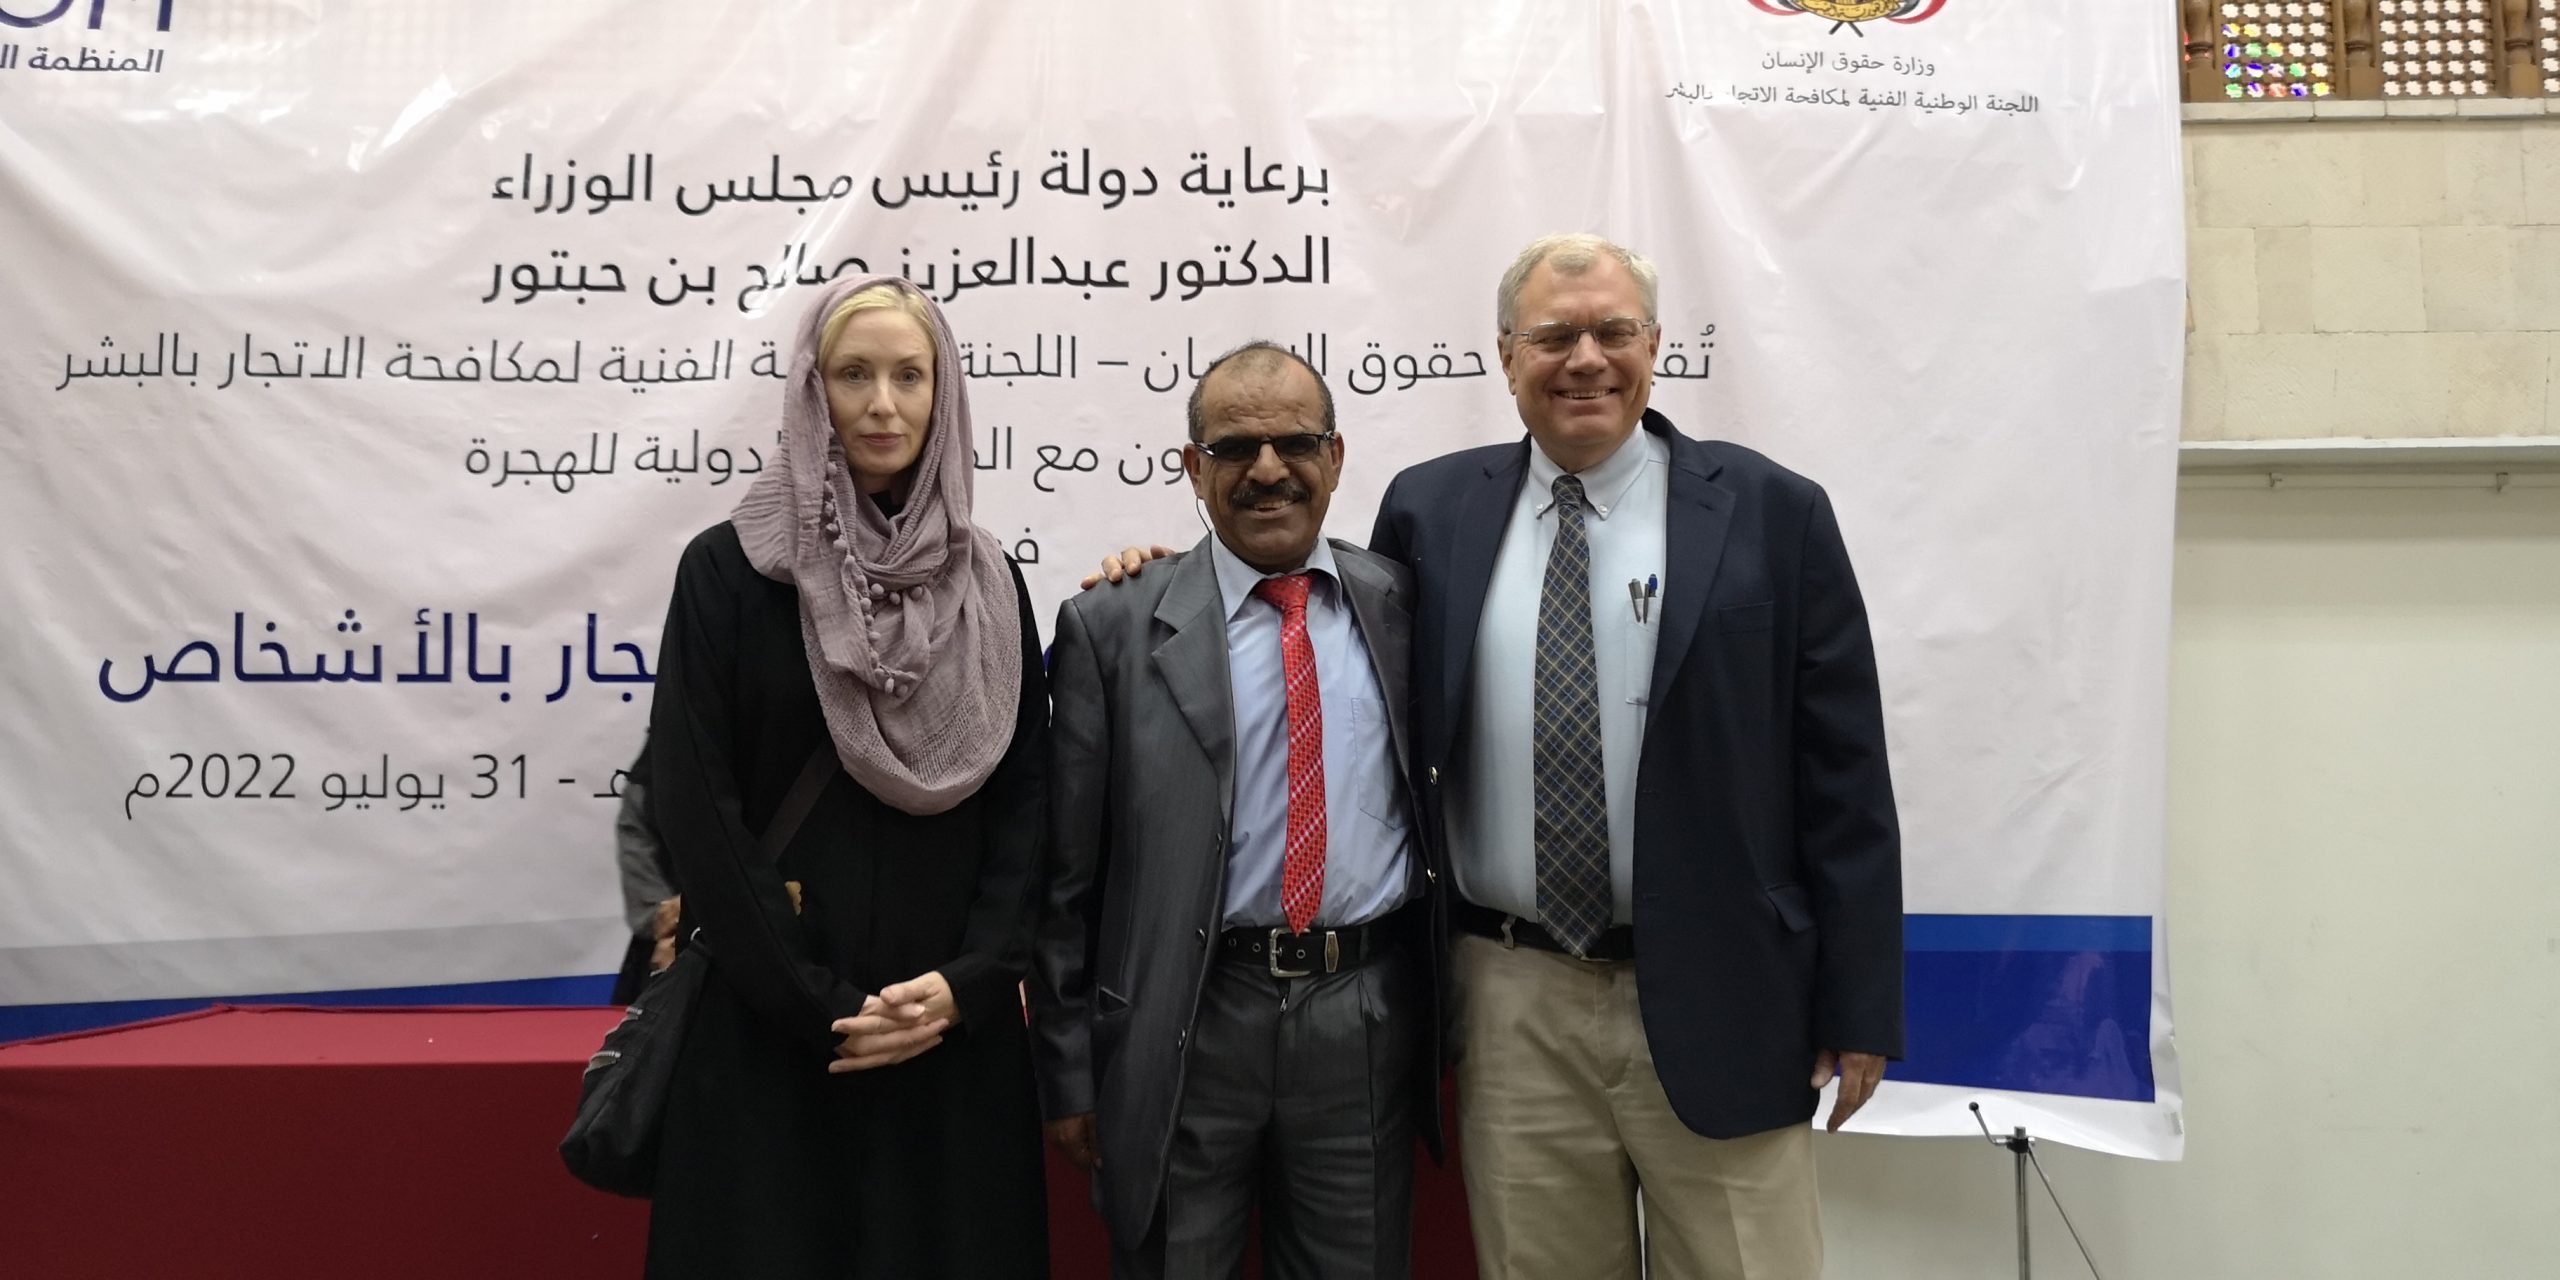 بالتعاون مع IOM، وزارة حقوق الإنسان اليمنية تنظم فعالية احتفاء باليوم العالمي لمكافحة الاتجار بالبشر